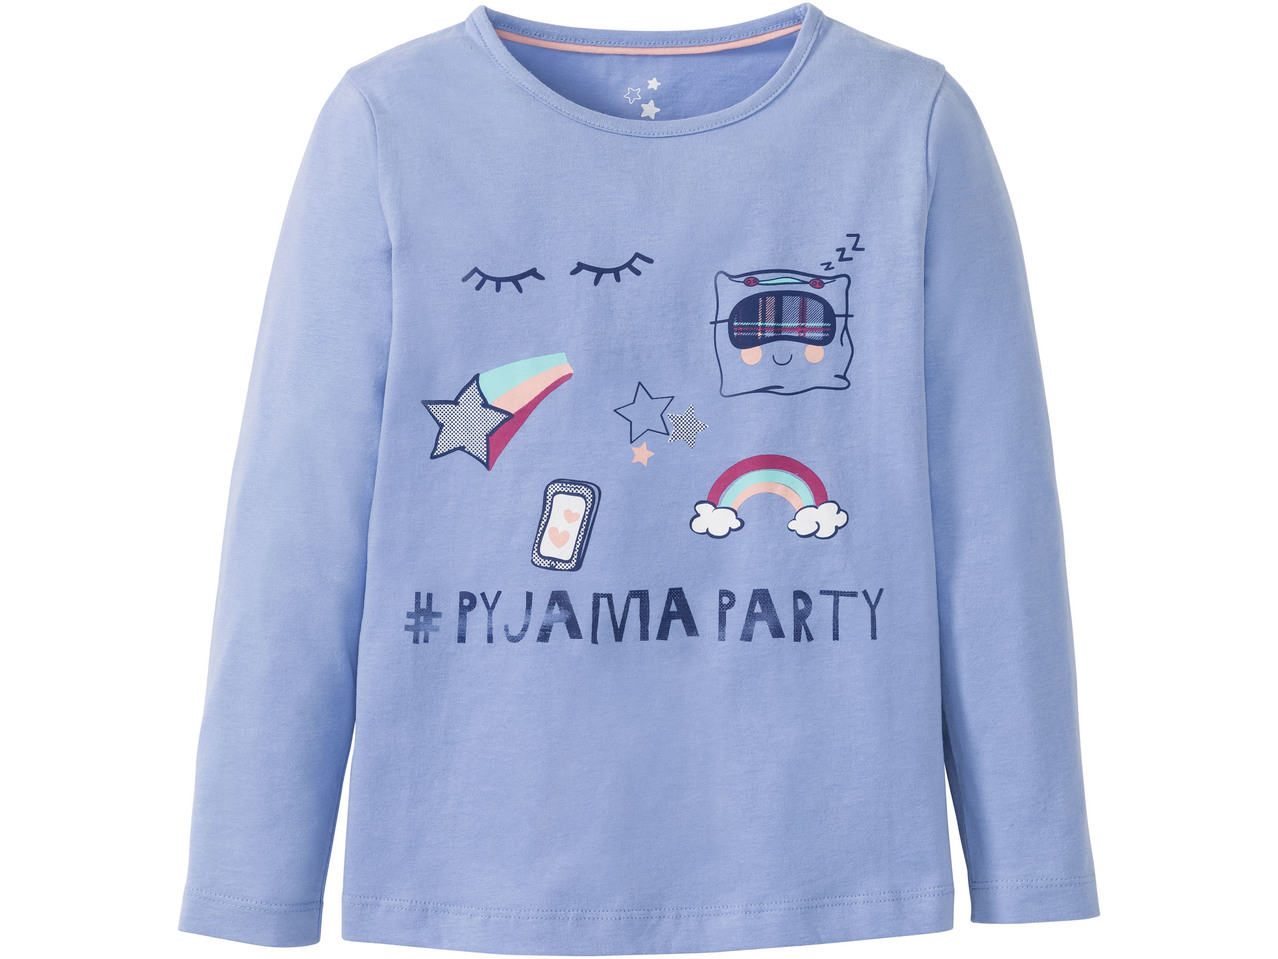 Girls' Pyjamas